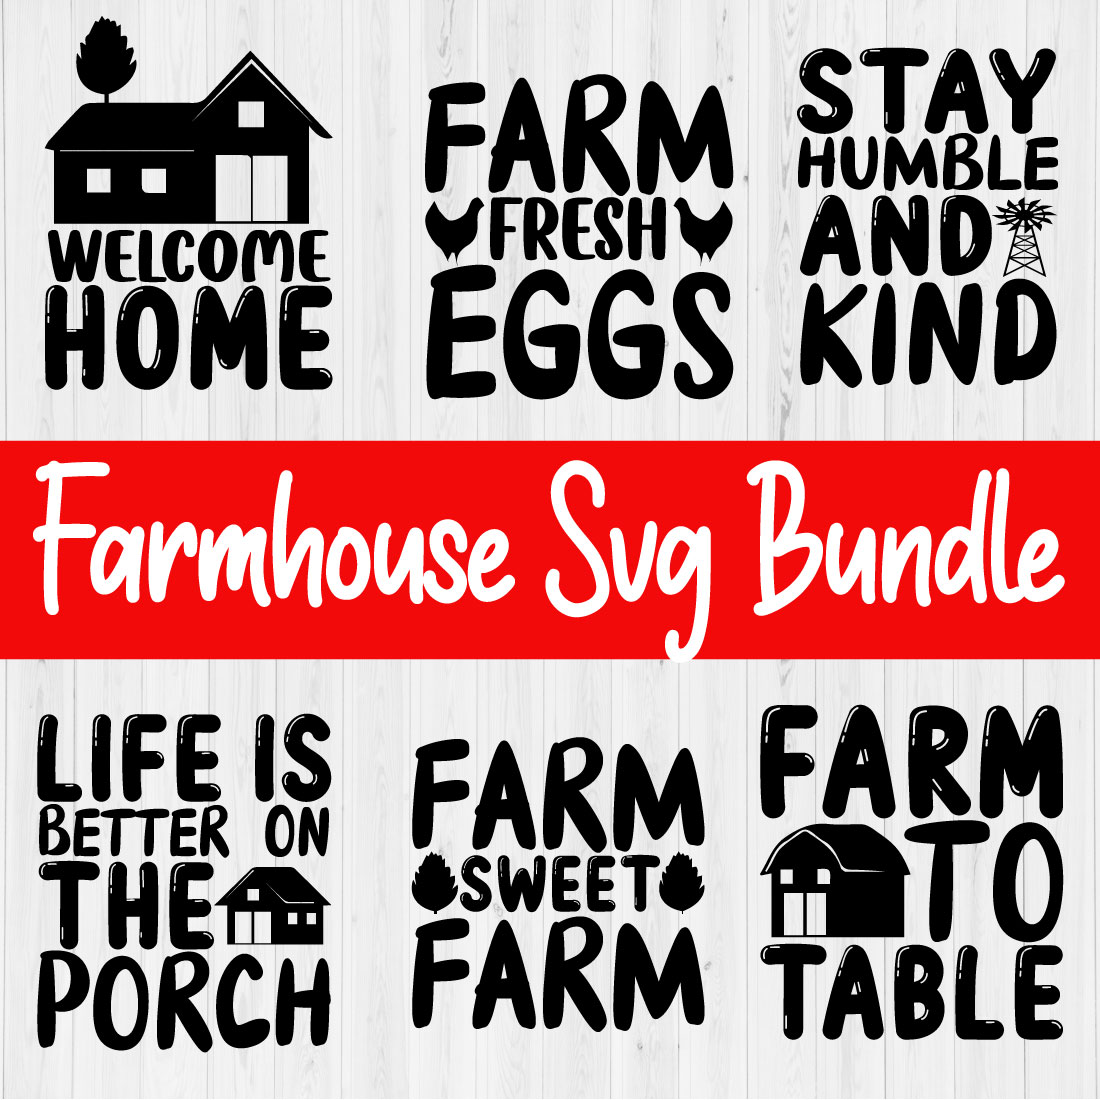 Farmhouse Svg Design Bundle Vol2 cover image.